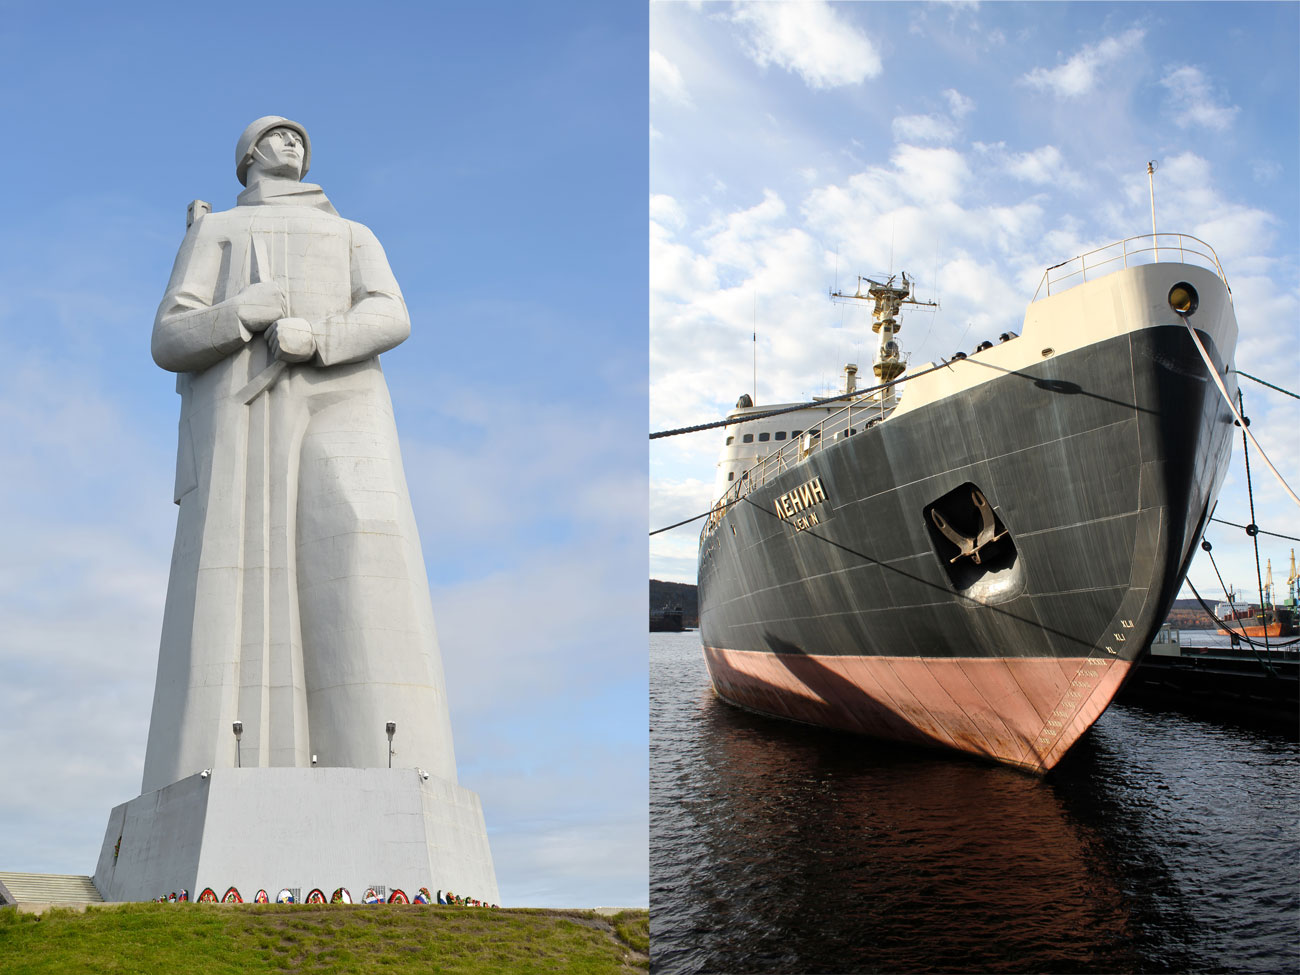 Мурманск, най-големият град в света северно от Полярния кръг, също е морски център. Нищо чудно, че основните му символи са гигантският ледоразбивач &bdquo;Ленин&ldquo; и паметникът &bdquo;Альоша&ldquo;, който е посветен на съветските войници, моряци и пилоти, сражавали се във Втората световна война.